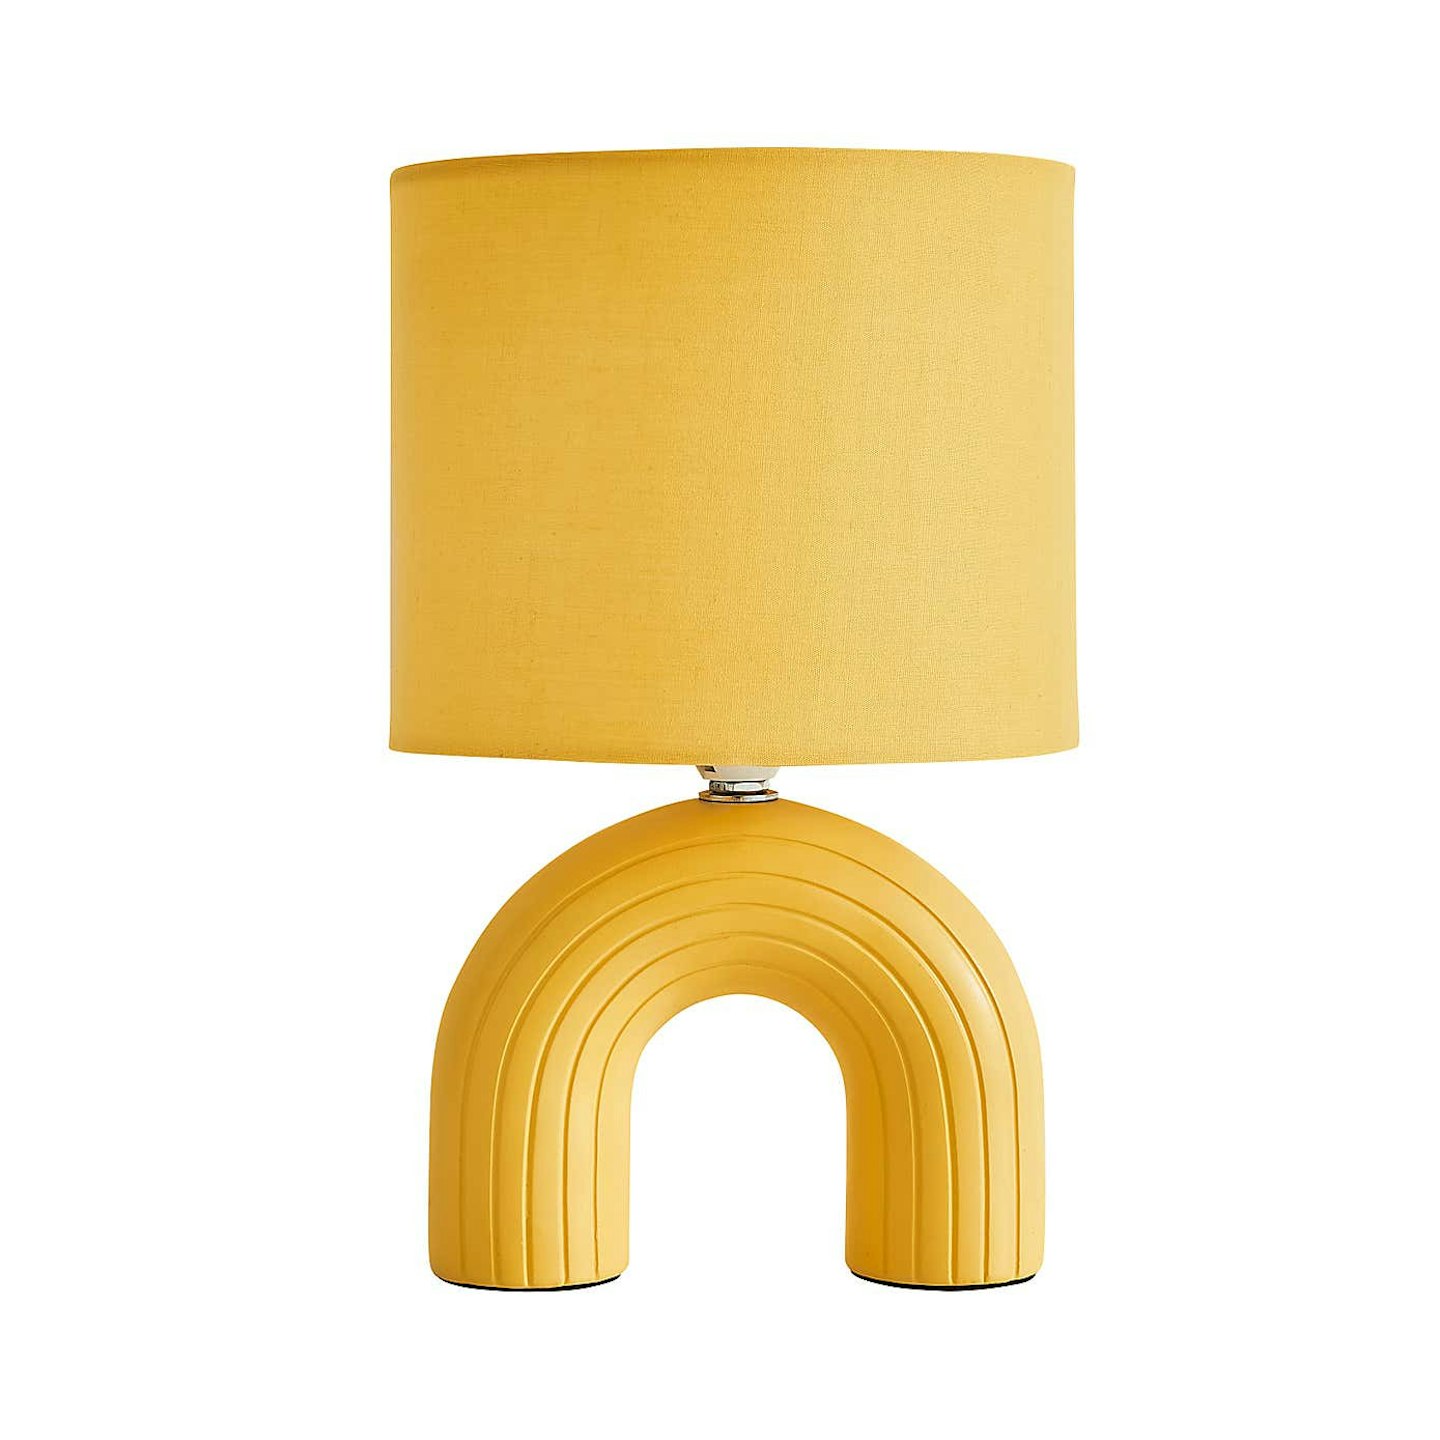 Dunelm Yellow lamp